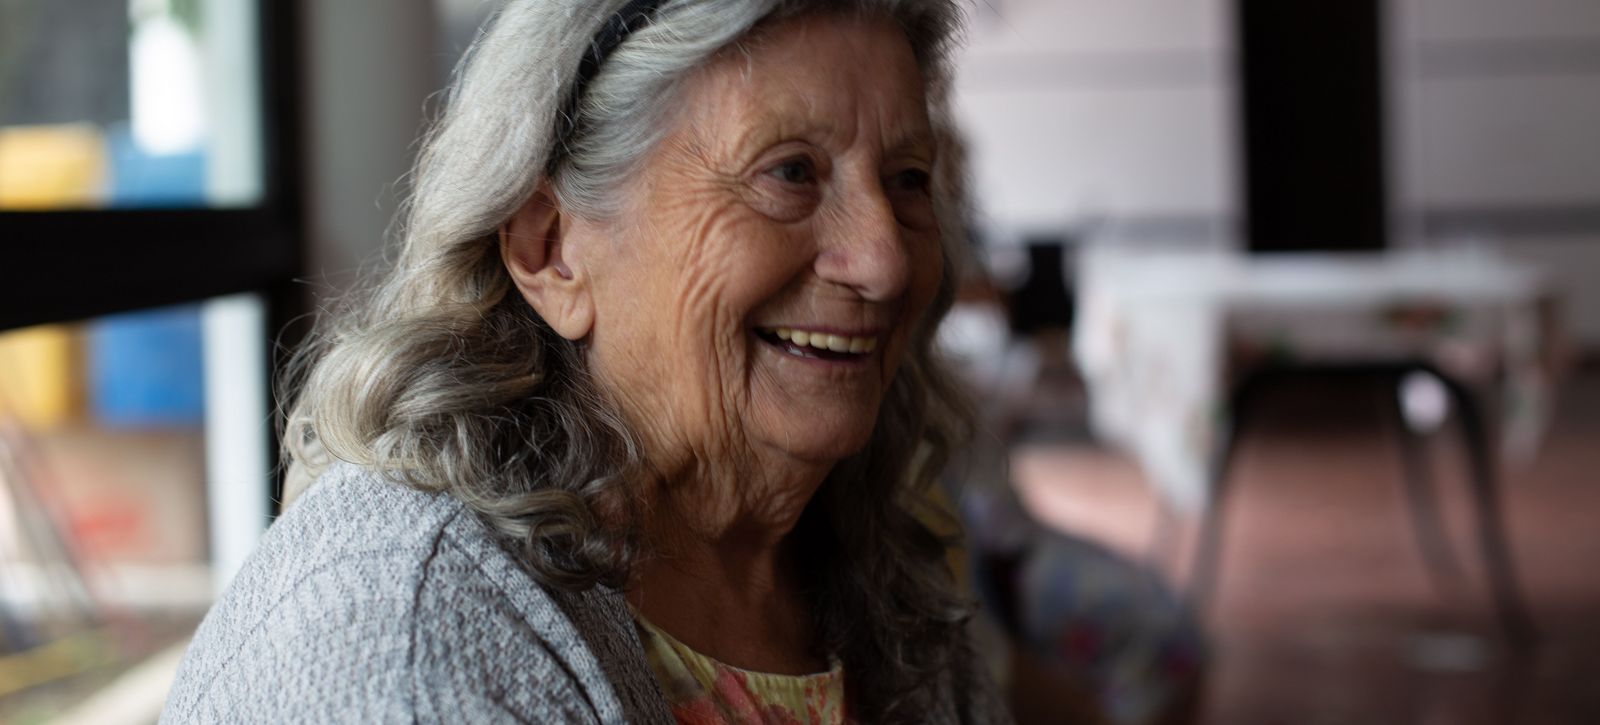 Eine ältere Frau mit grauen Haaren lächelt zufrieden.